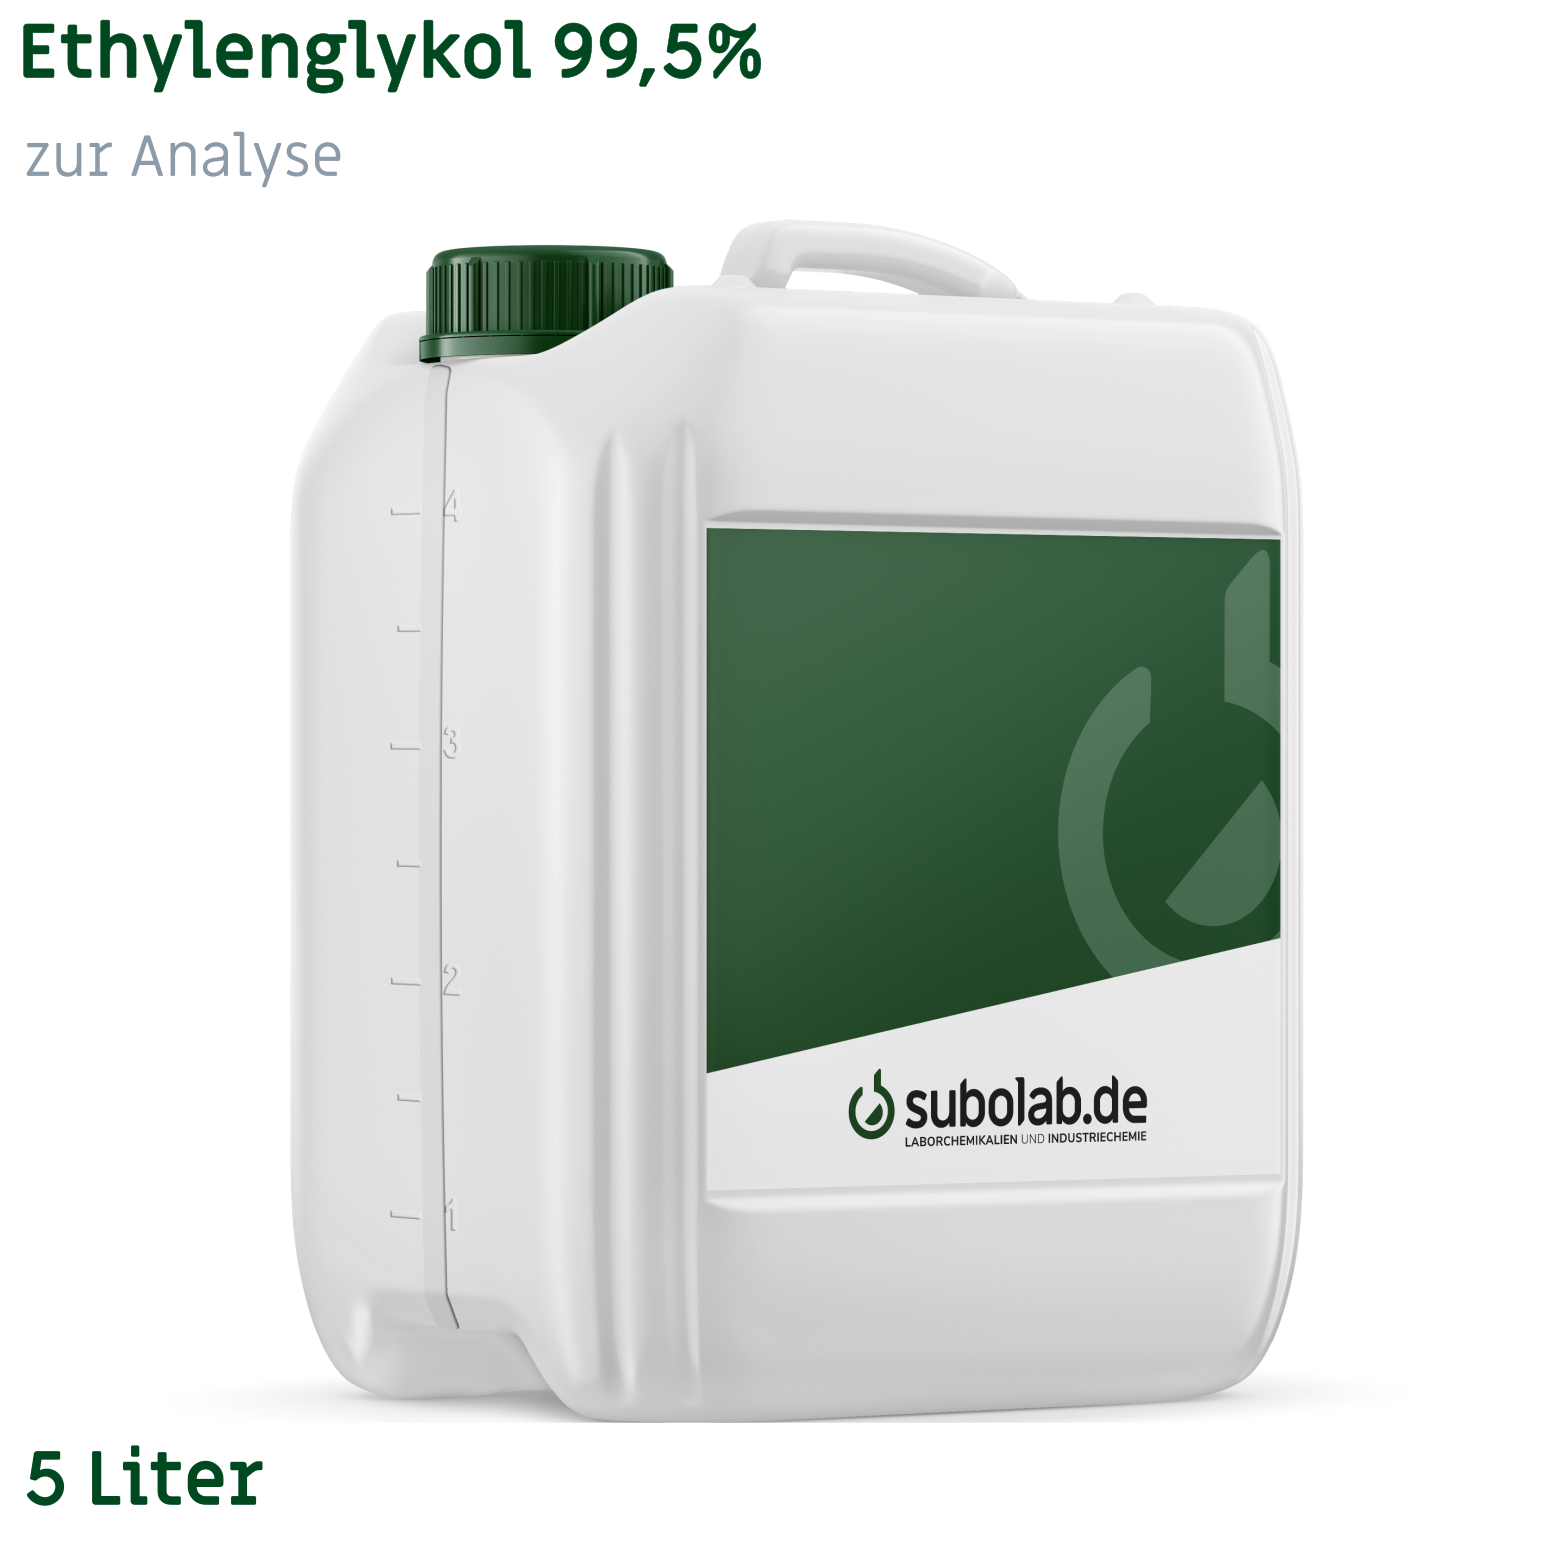 Bild von Ethylenglykol 99,5% zur Analyse (5 Liter)